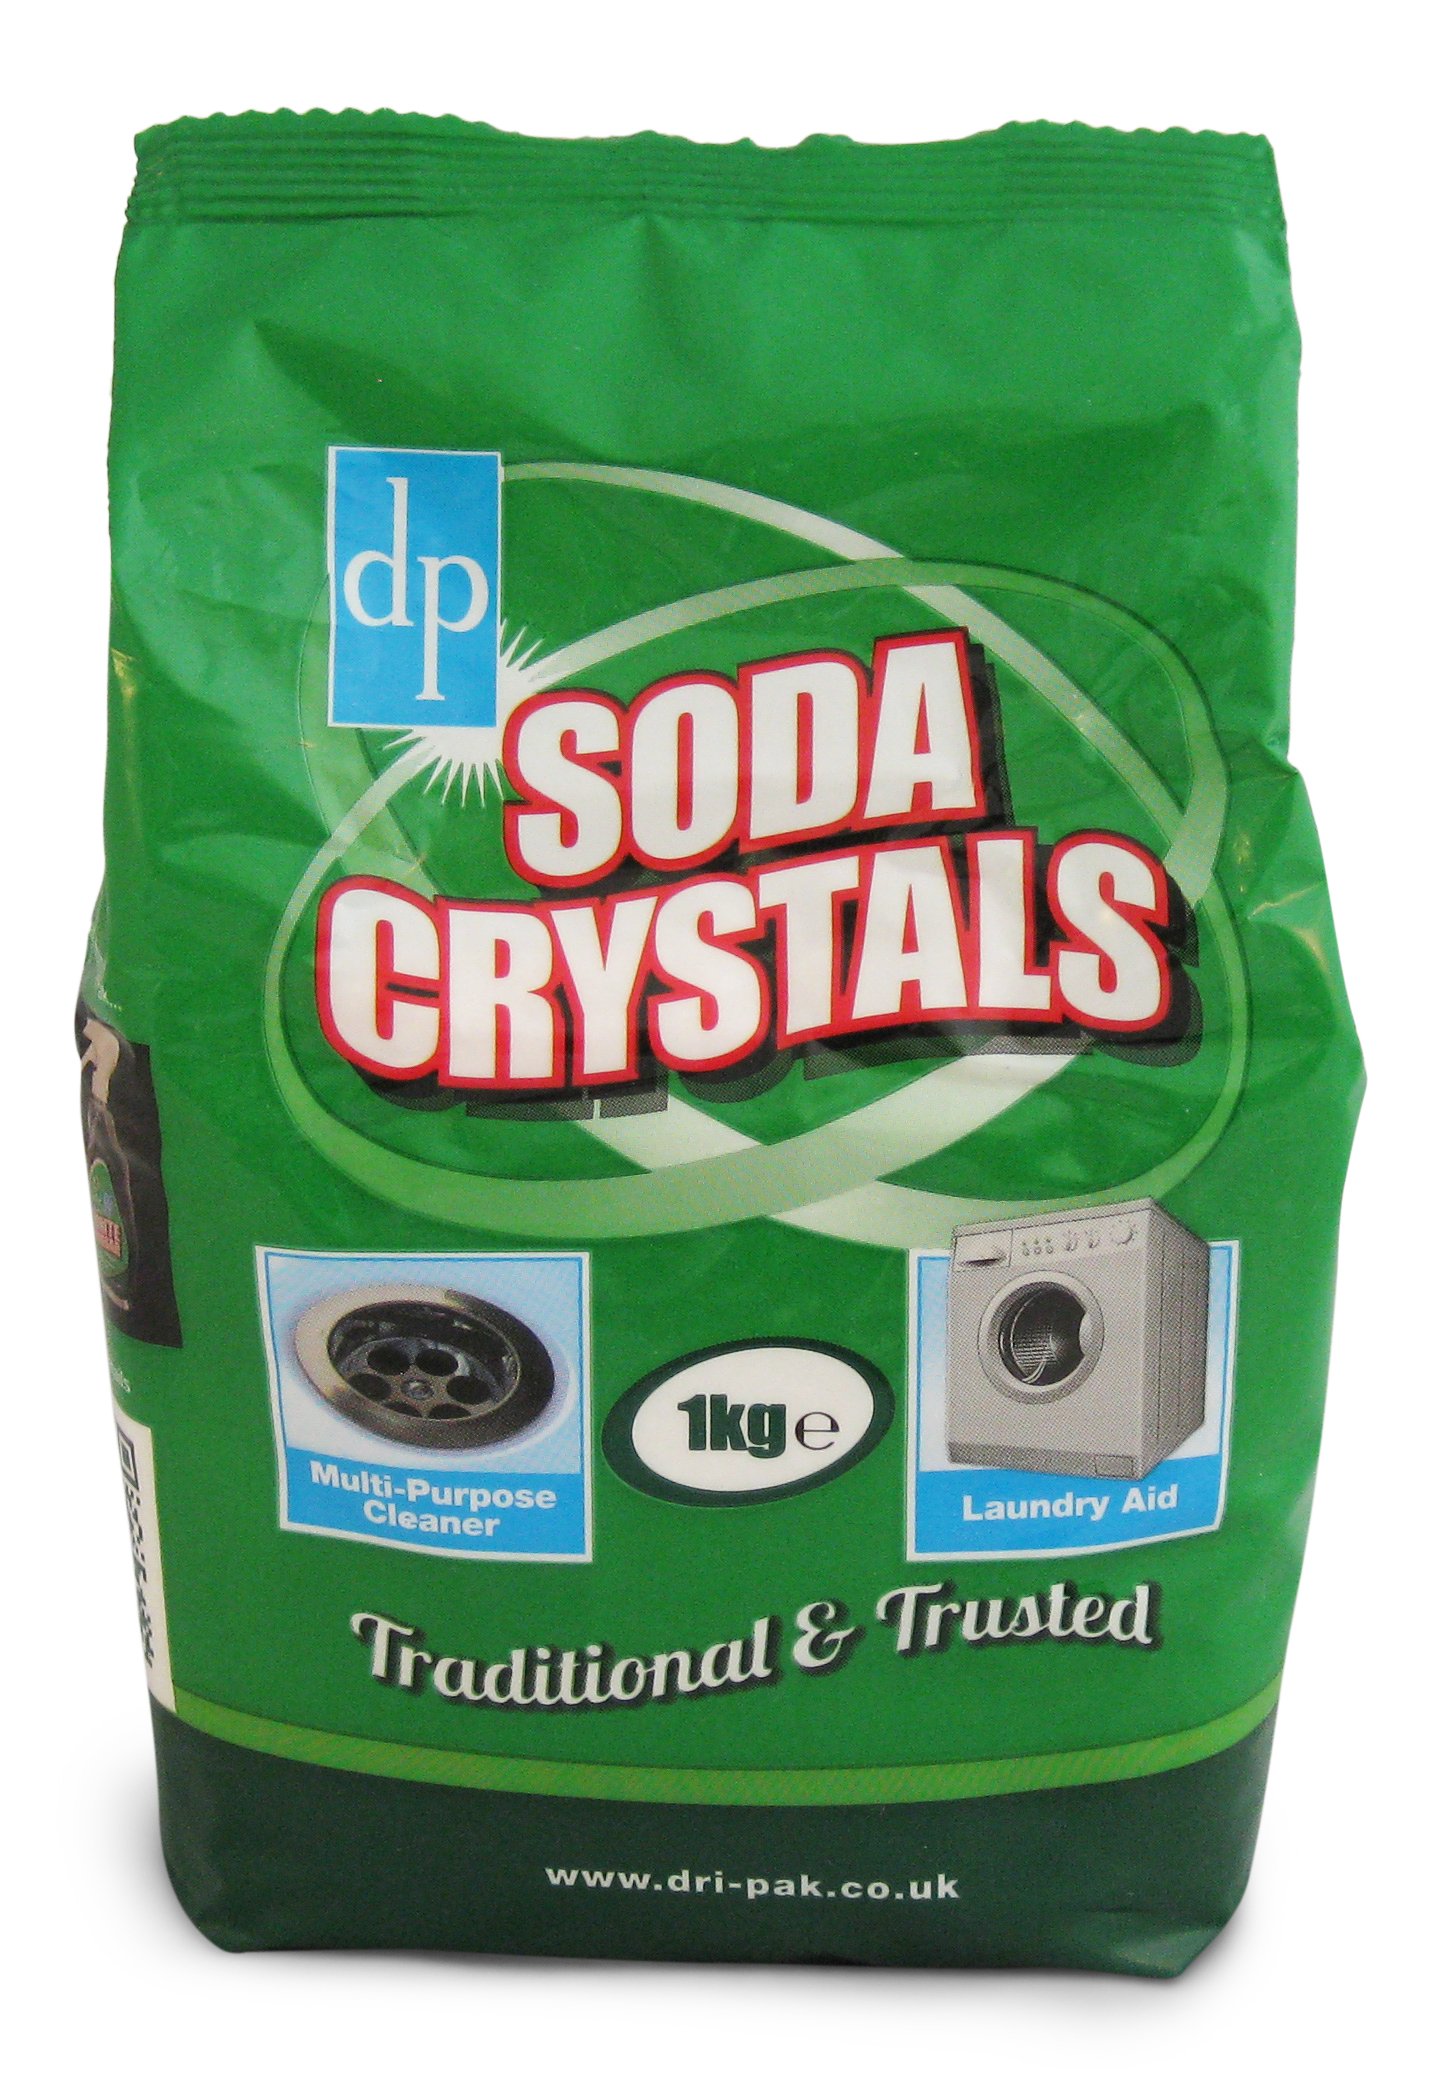 Picture of Dri-Pak Soda Crystals 1kg / 2.2 lb. bag